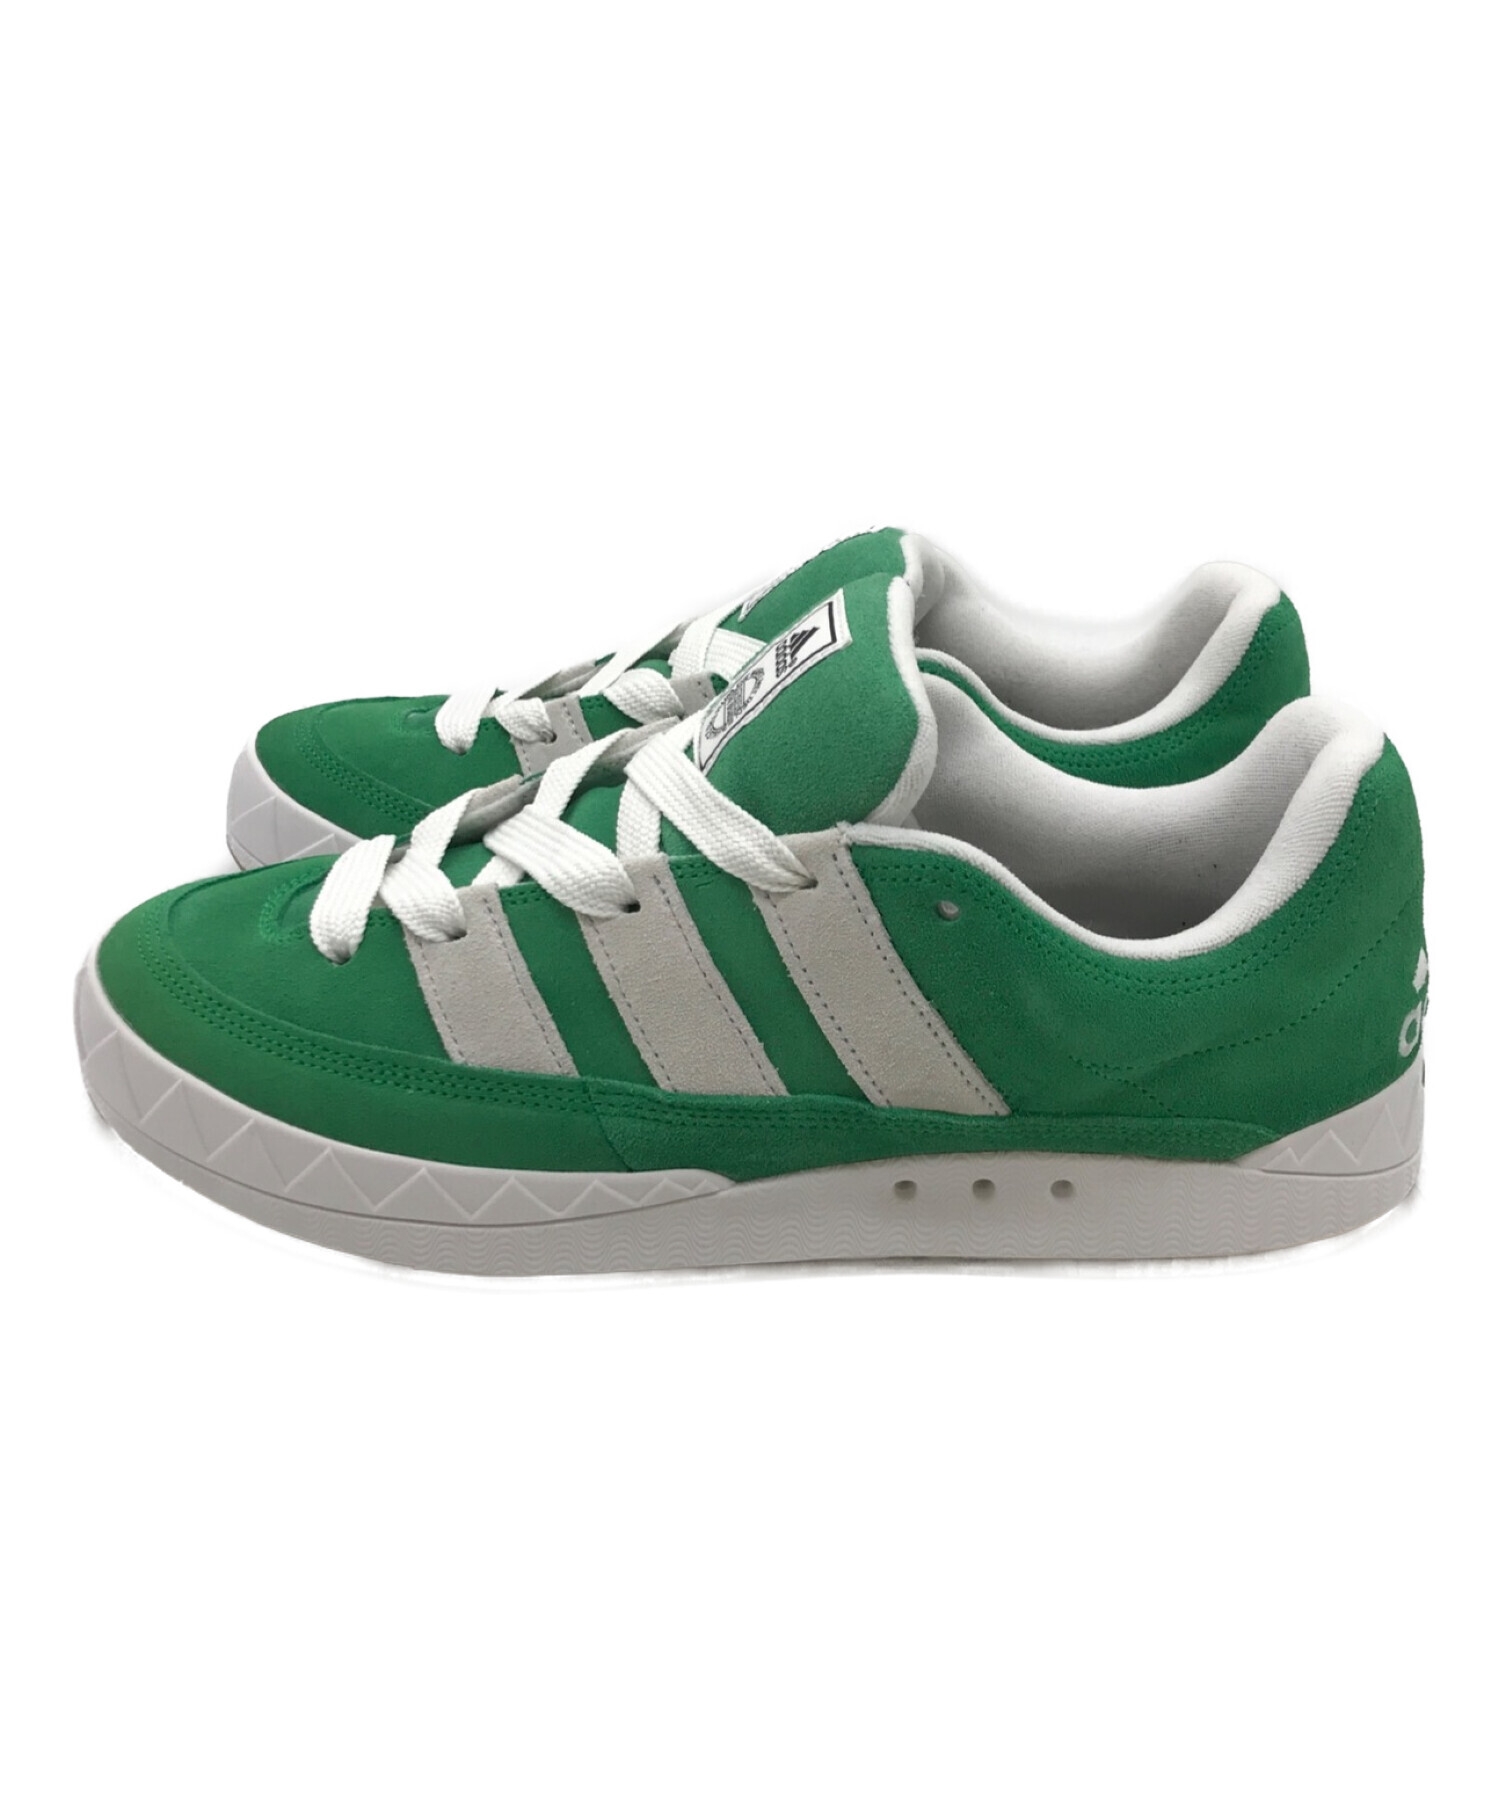 adidas Originals Adimatic "Green" 27cm